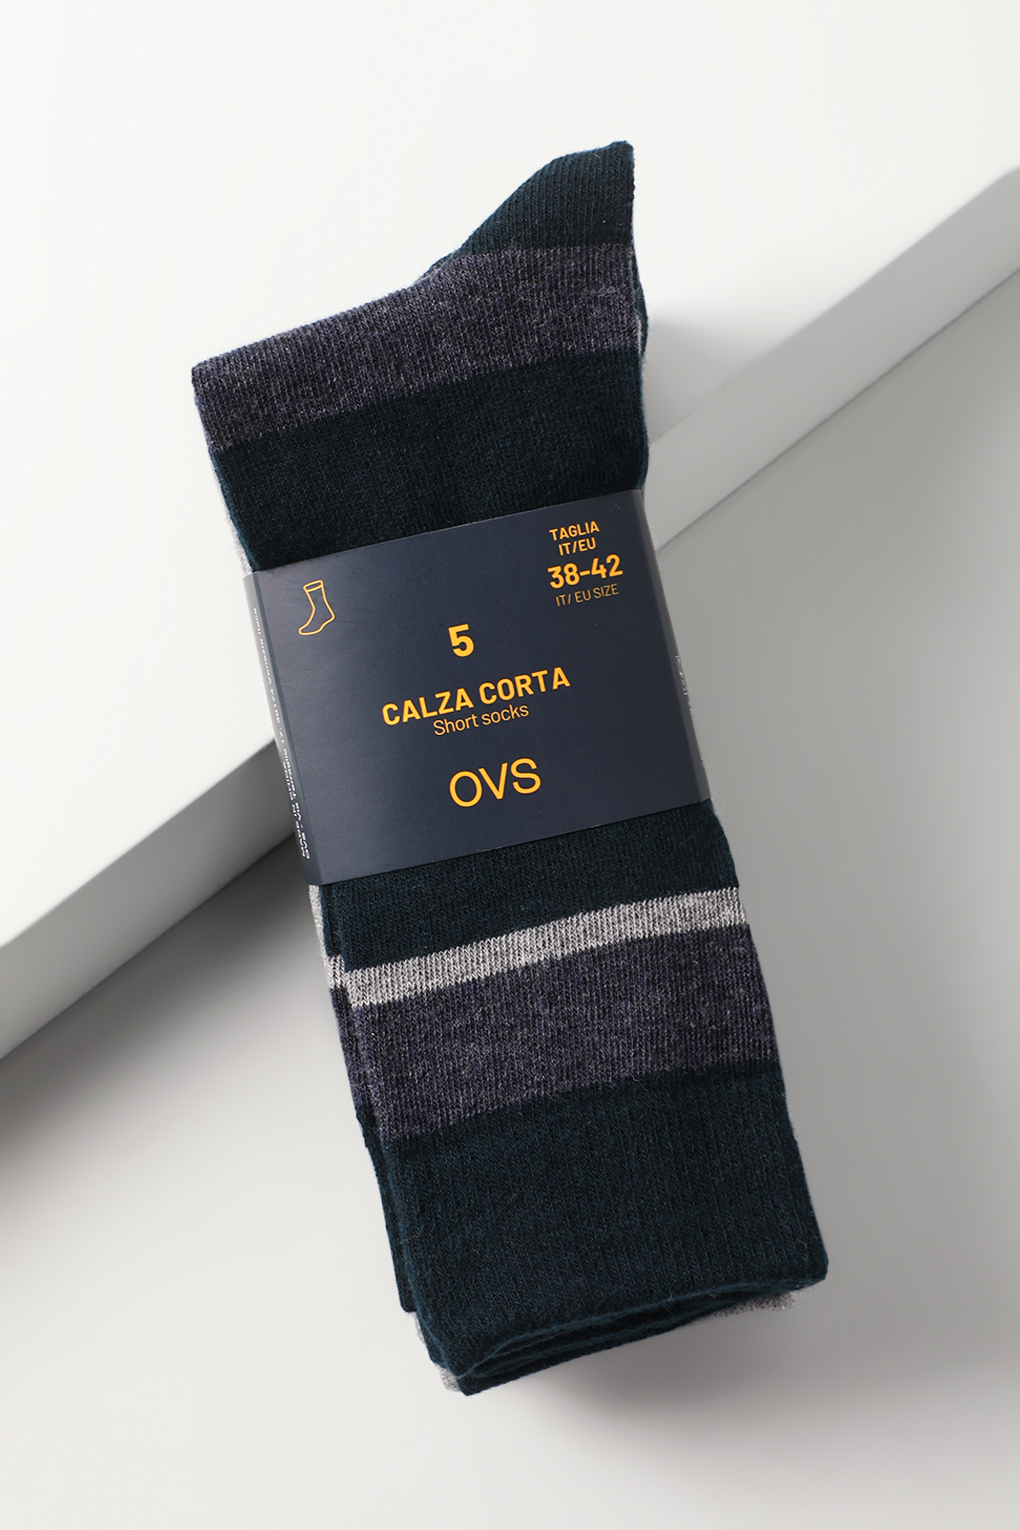 Комплект носков мужских OVS 1973041 синих 38-42